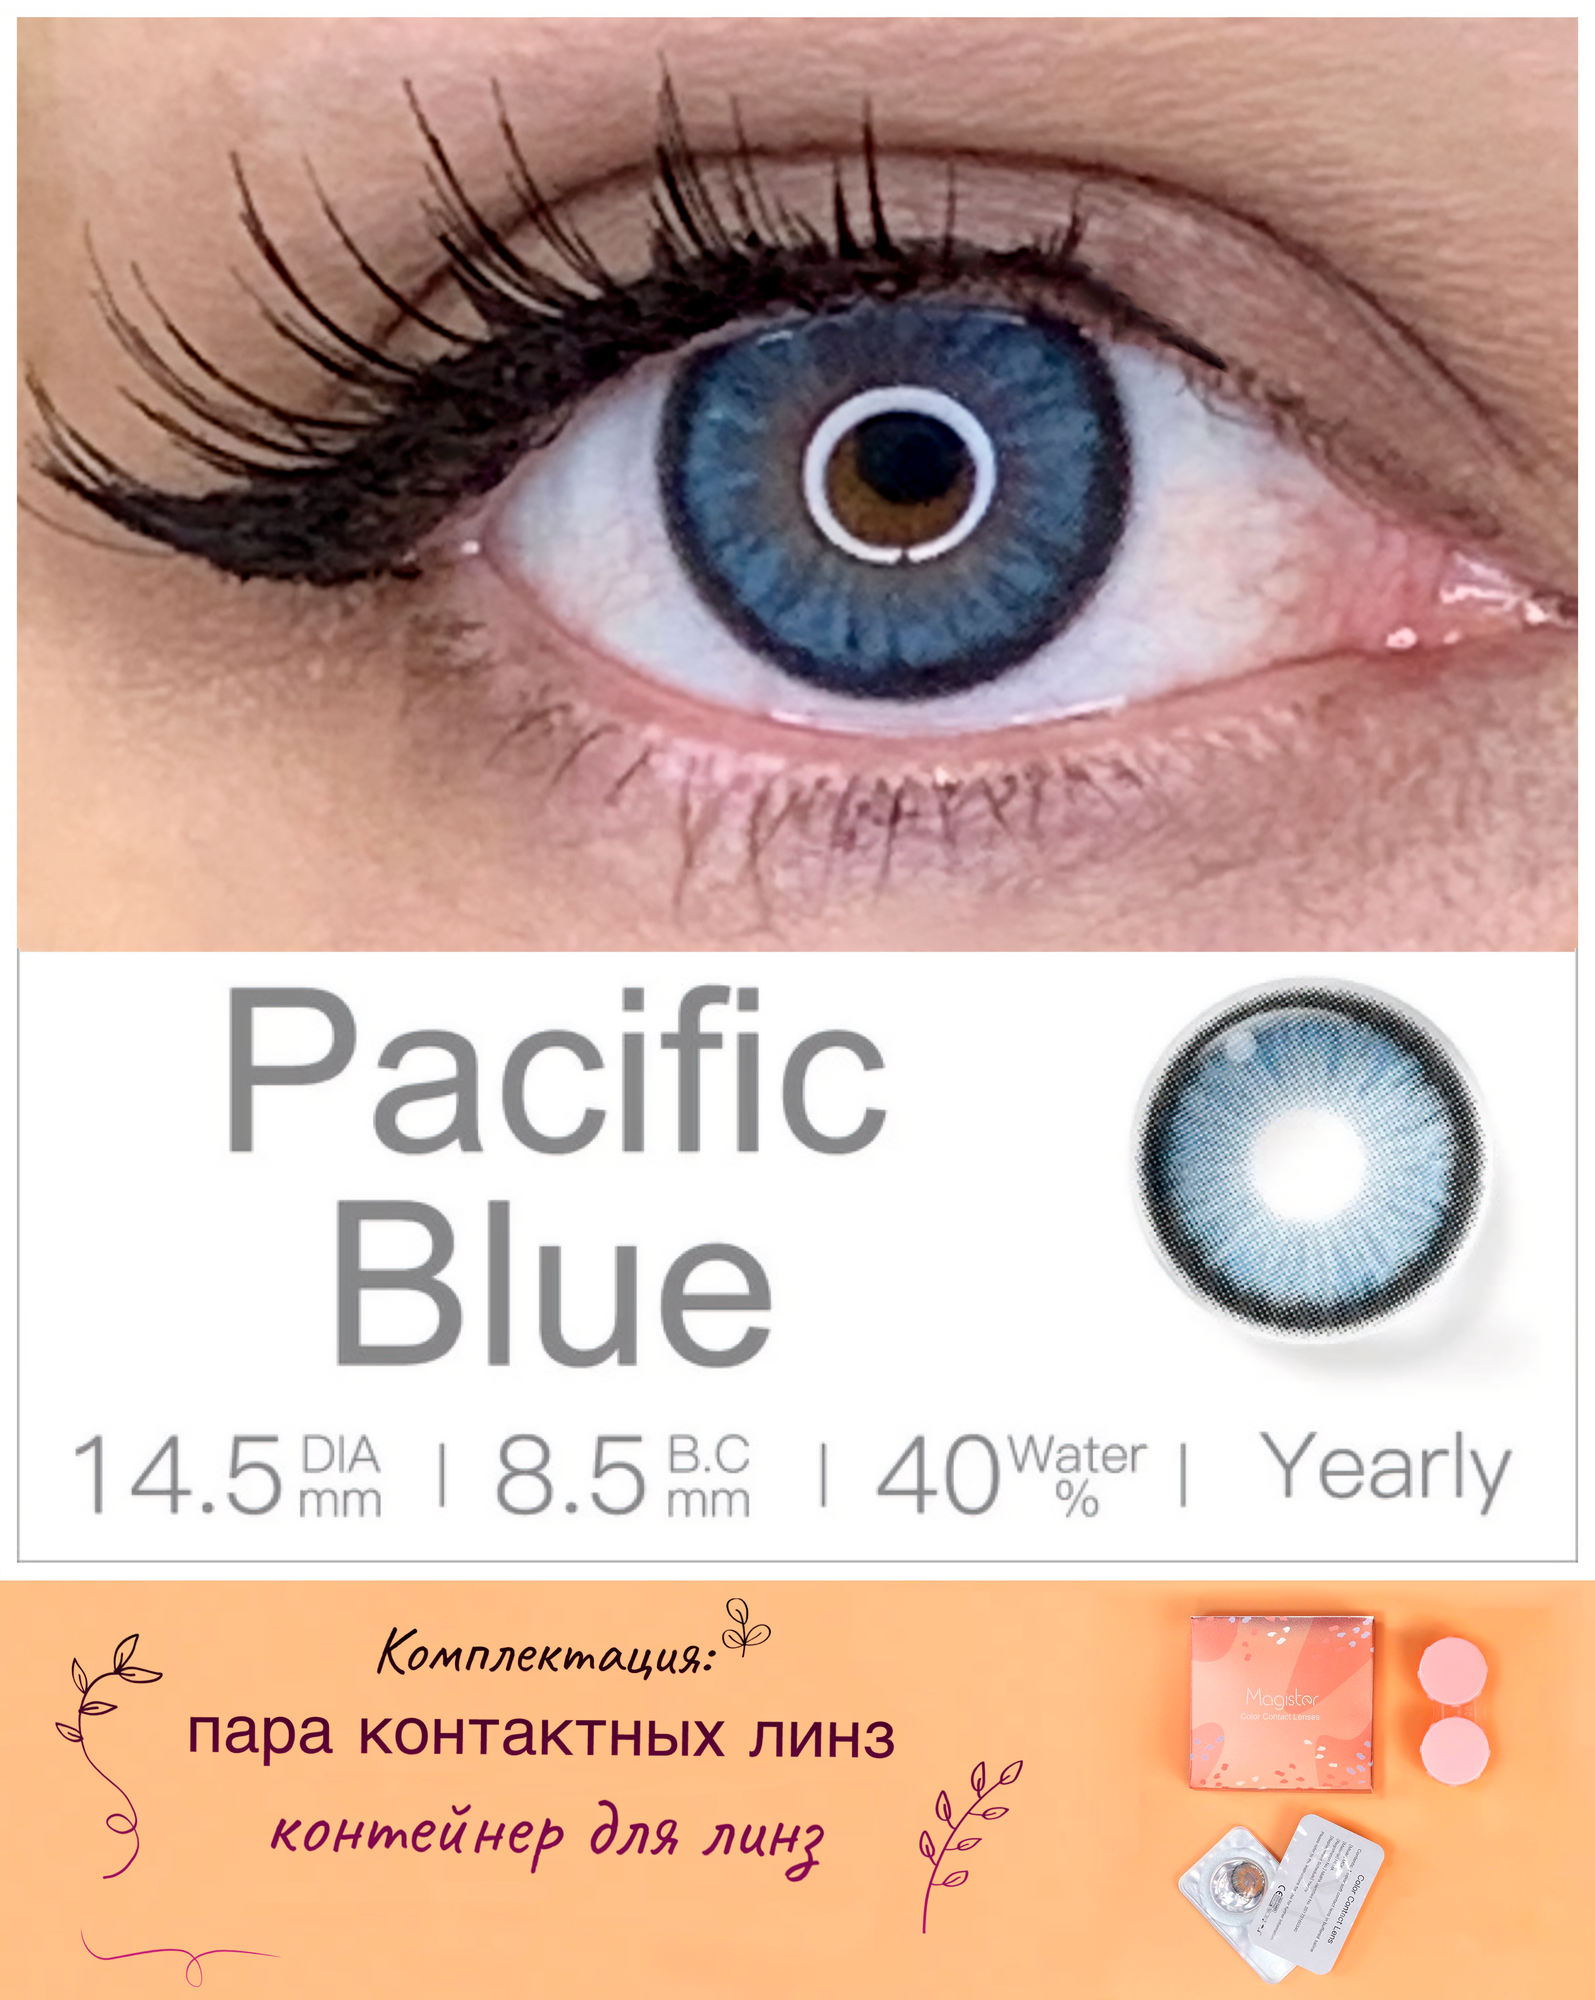 Цветные контактные линзы MAGISTER без коррекции 1 год, D 0.00, 14.5, R 8.5, 40%, цвет pacific blue (темно-синий). Комплектация: 2шт линзы, контейнер